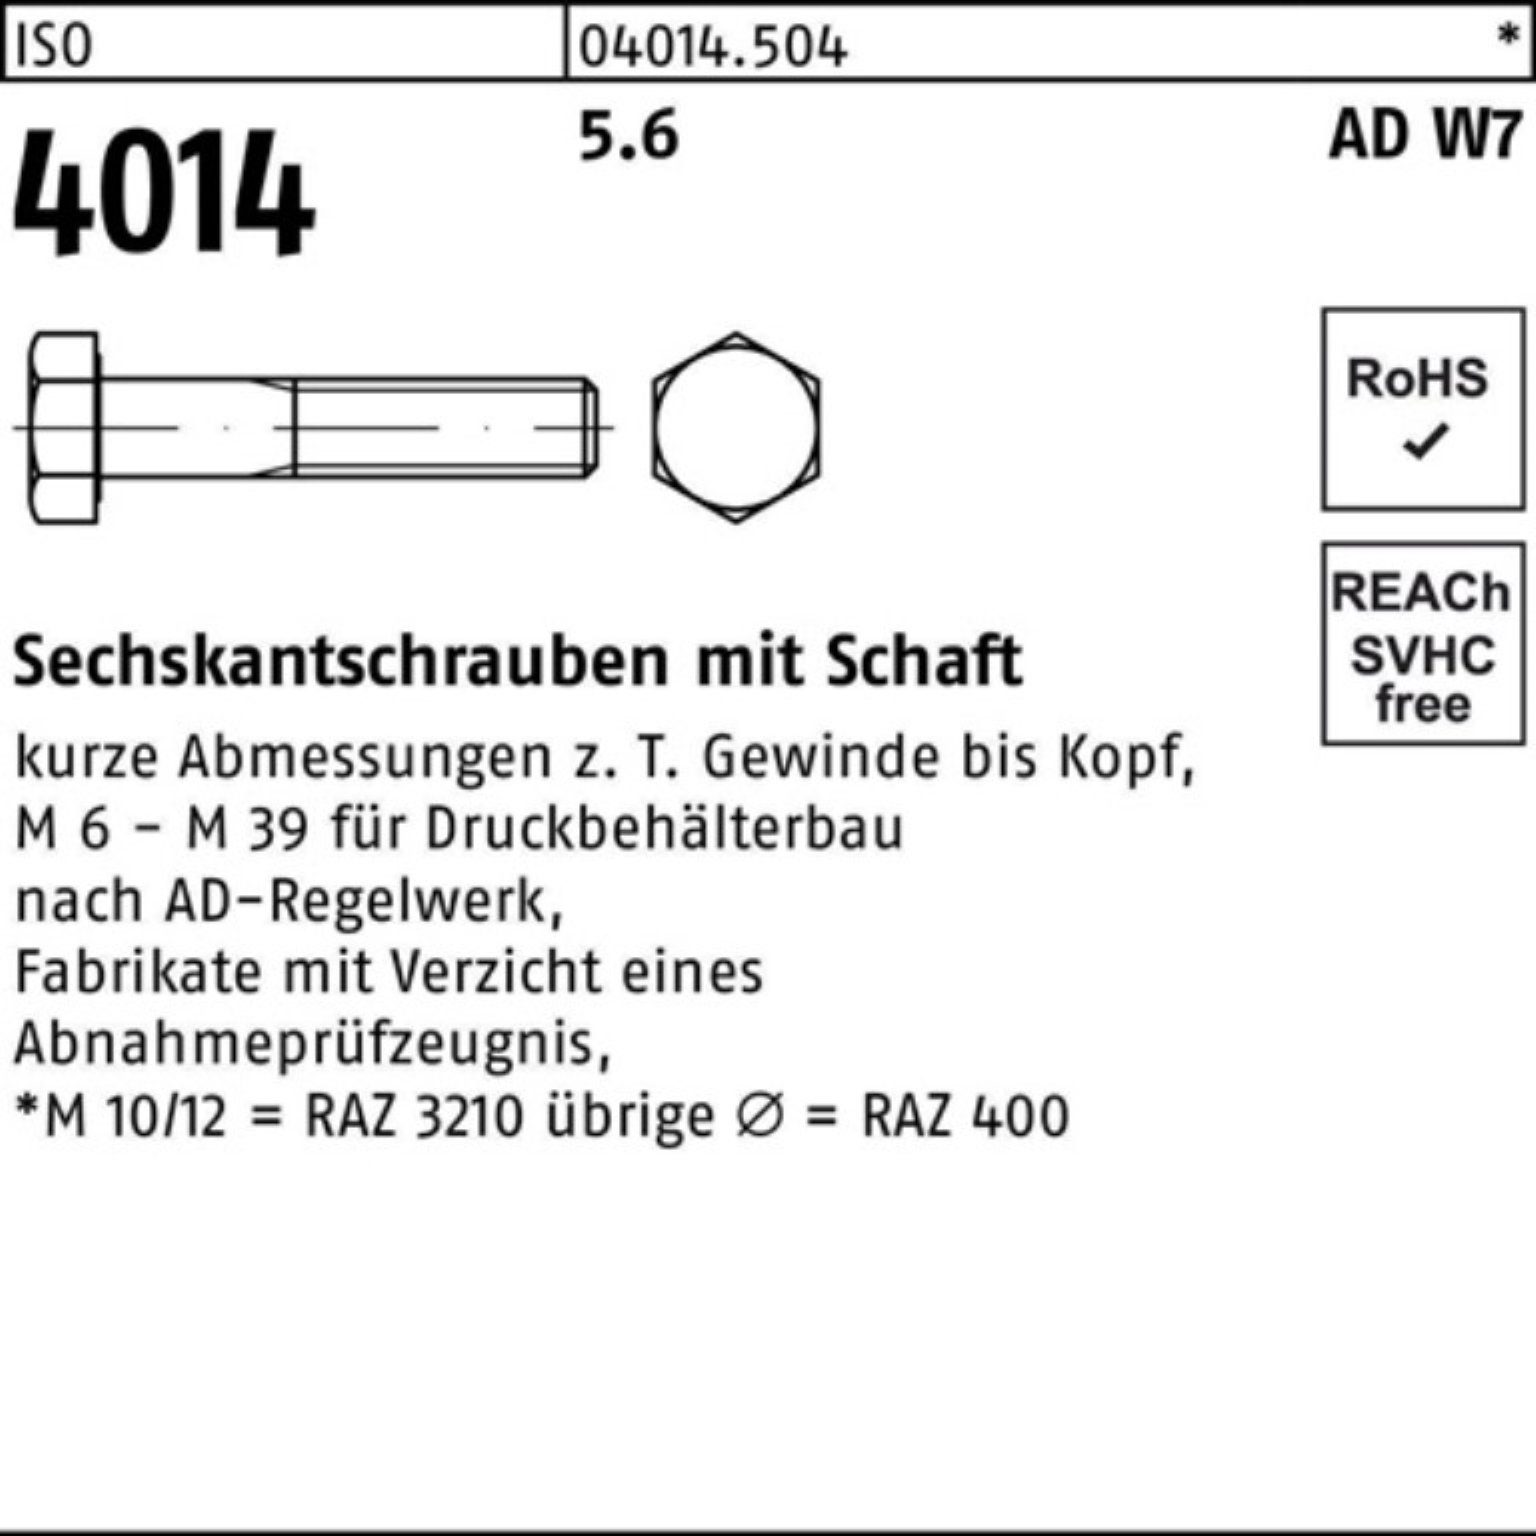 Stück 140 4014 M27x Sechskantschraube 5.6 Bufab 100er 1 Sechskantschraube W7 Pack ISO Schaft